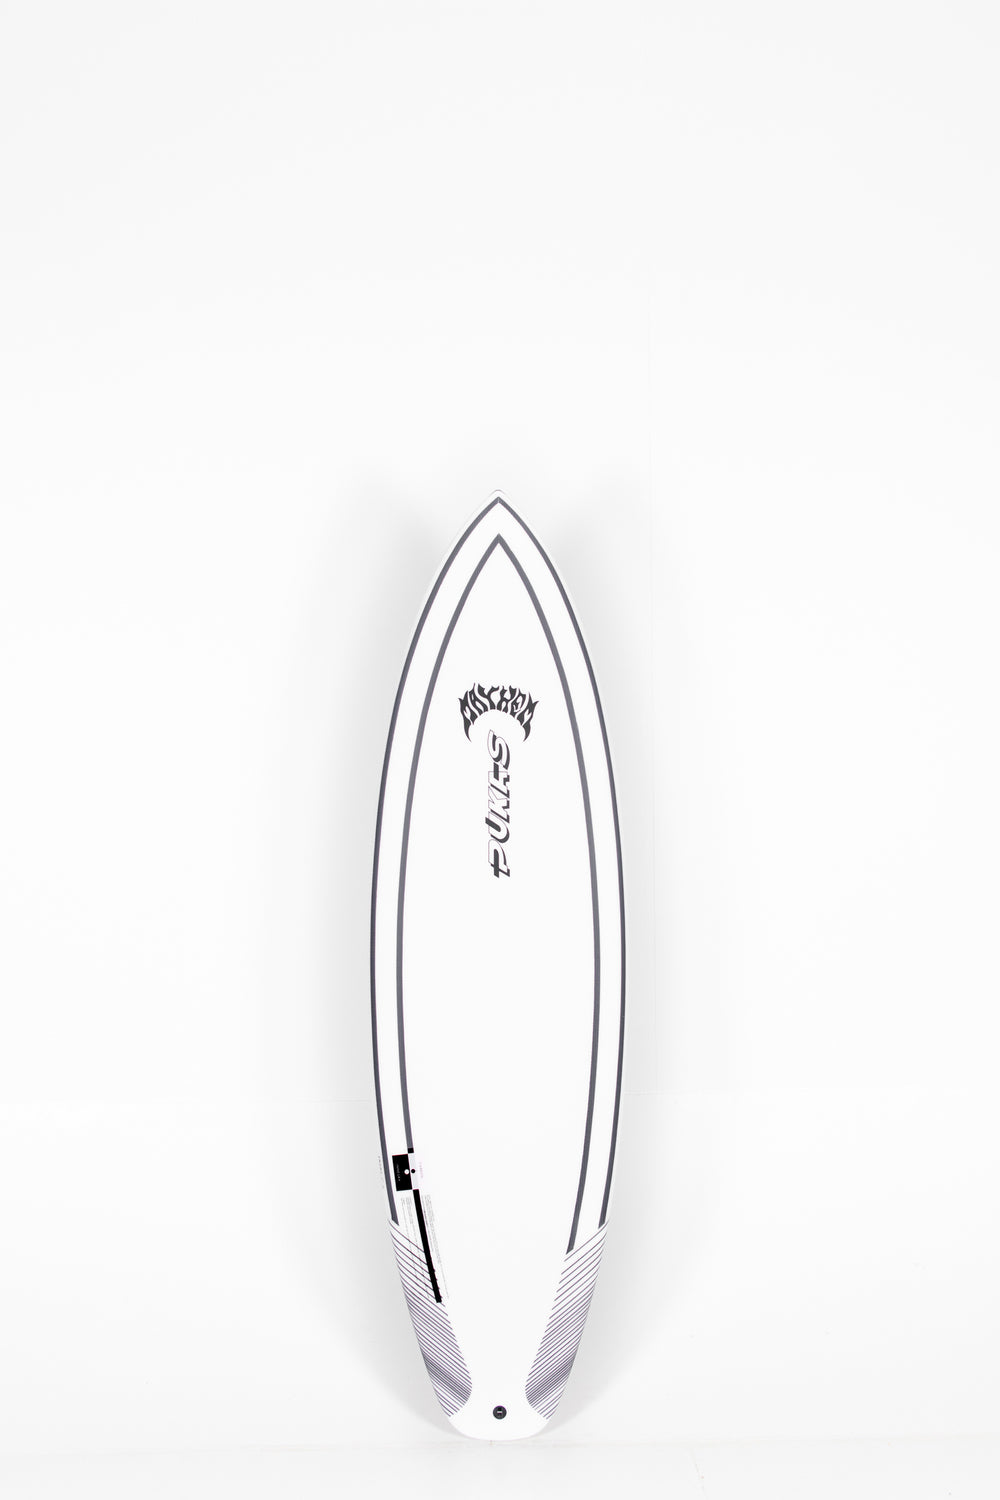 Pukas Surf Shop - Pukas Surfboard - INN·CA Tech - THE LINK 2  by Matt Biolos - 6'0” x 20,13